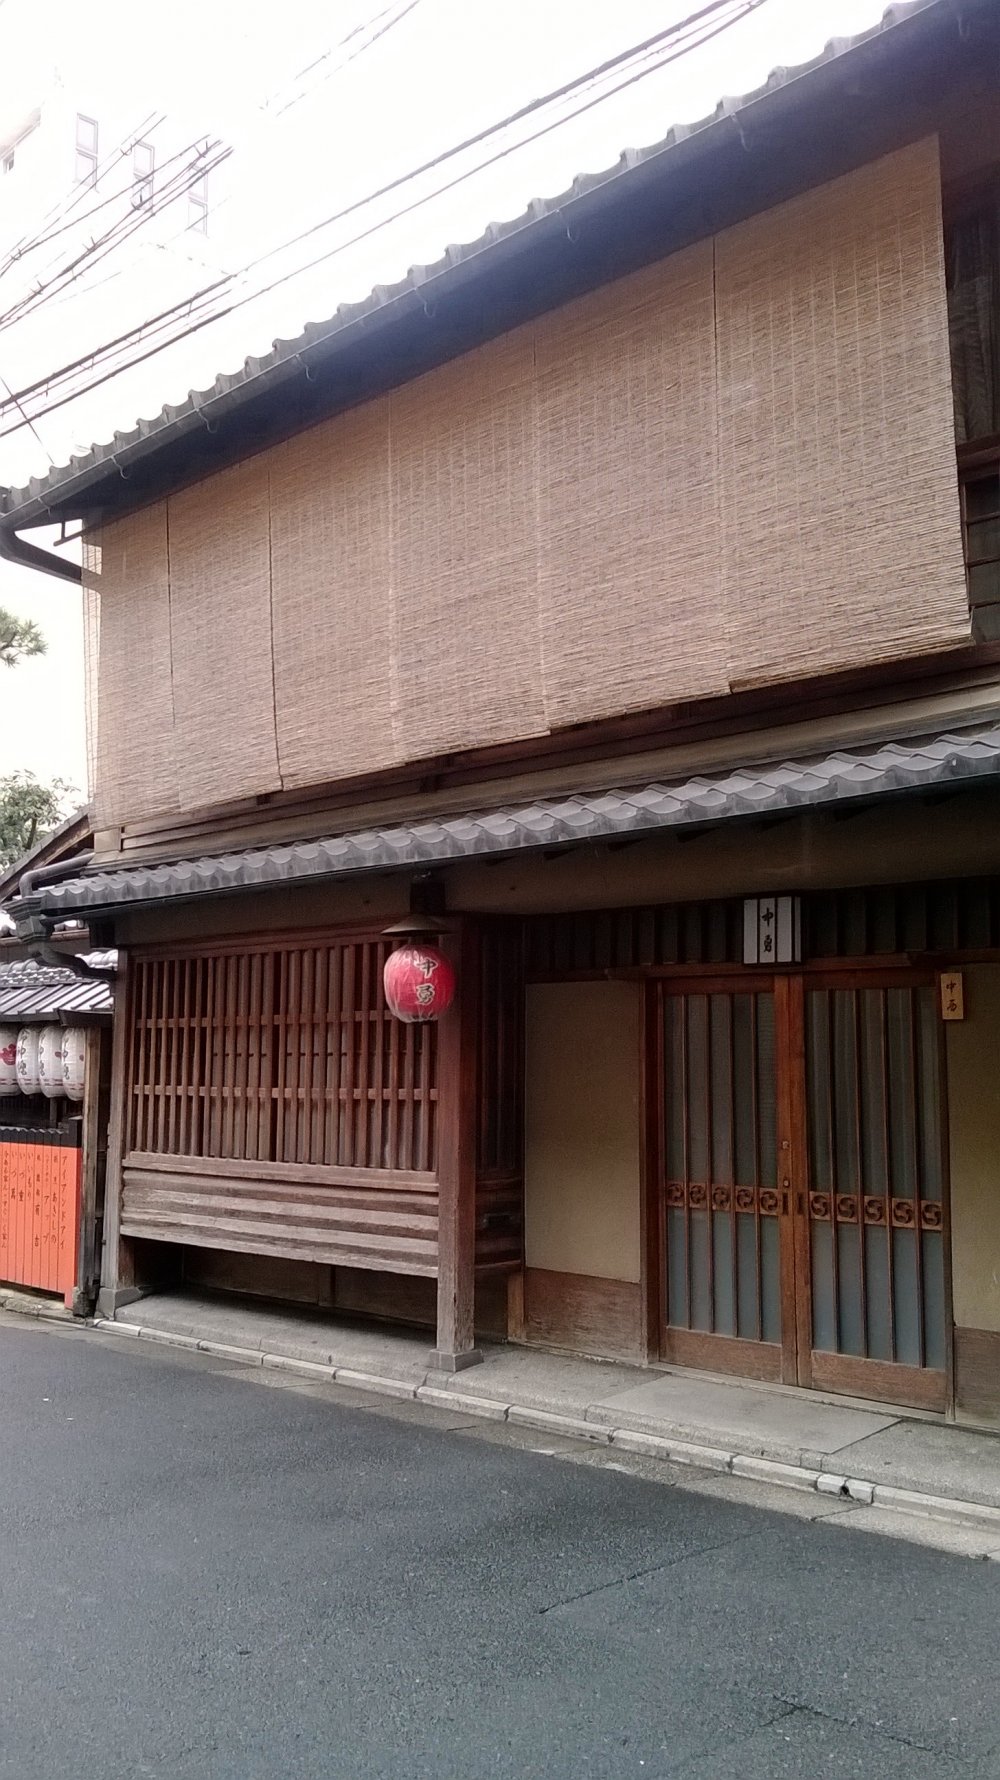 Rumah kuno Jepang